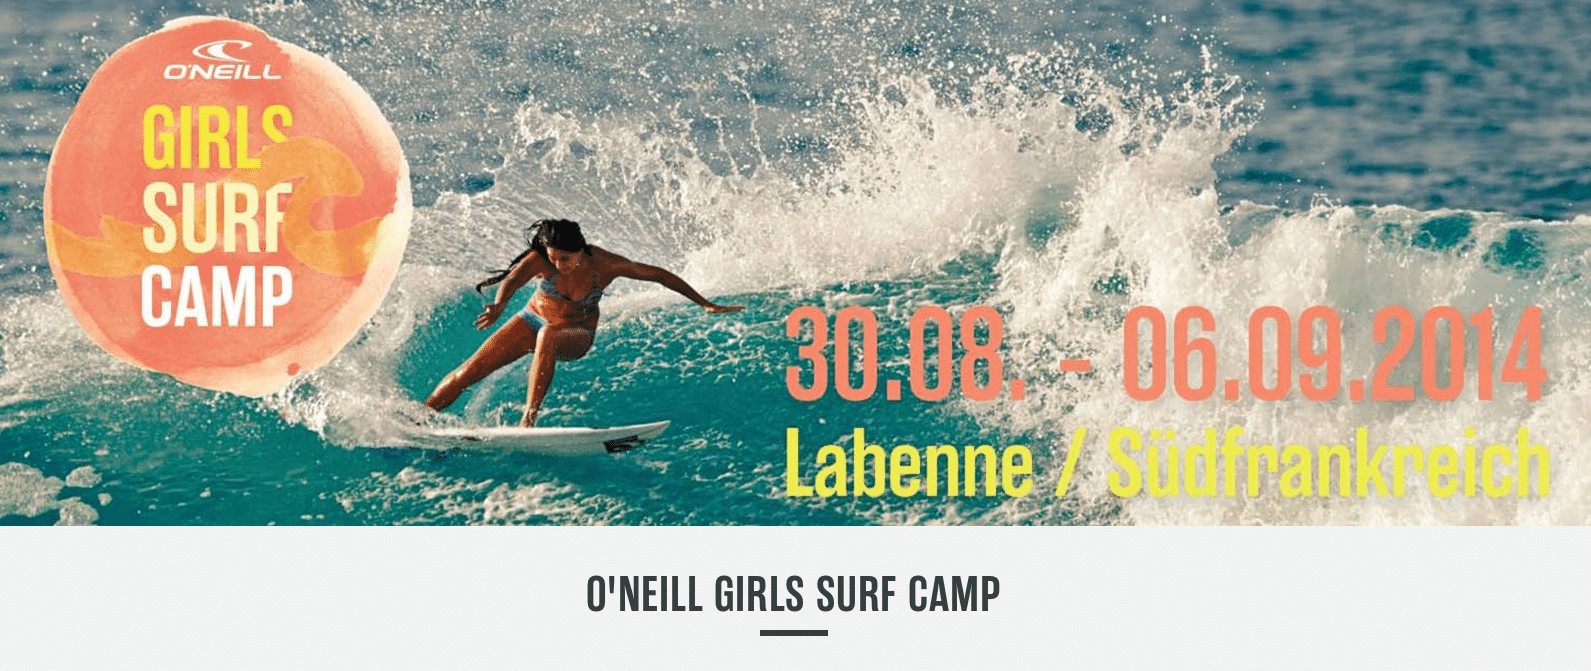 oneill girls surf camp 2014